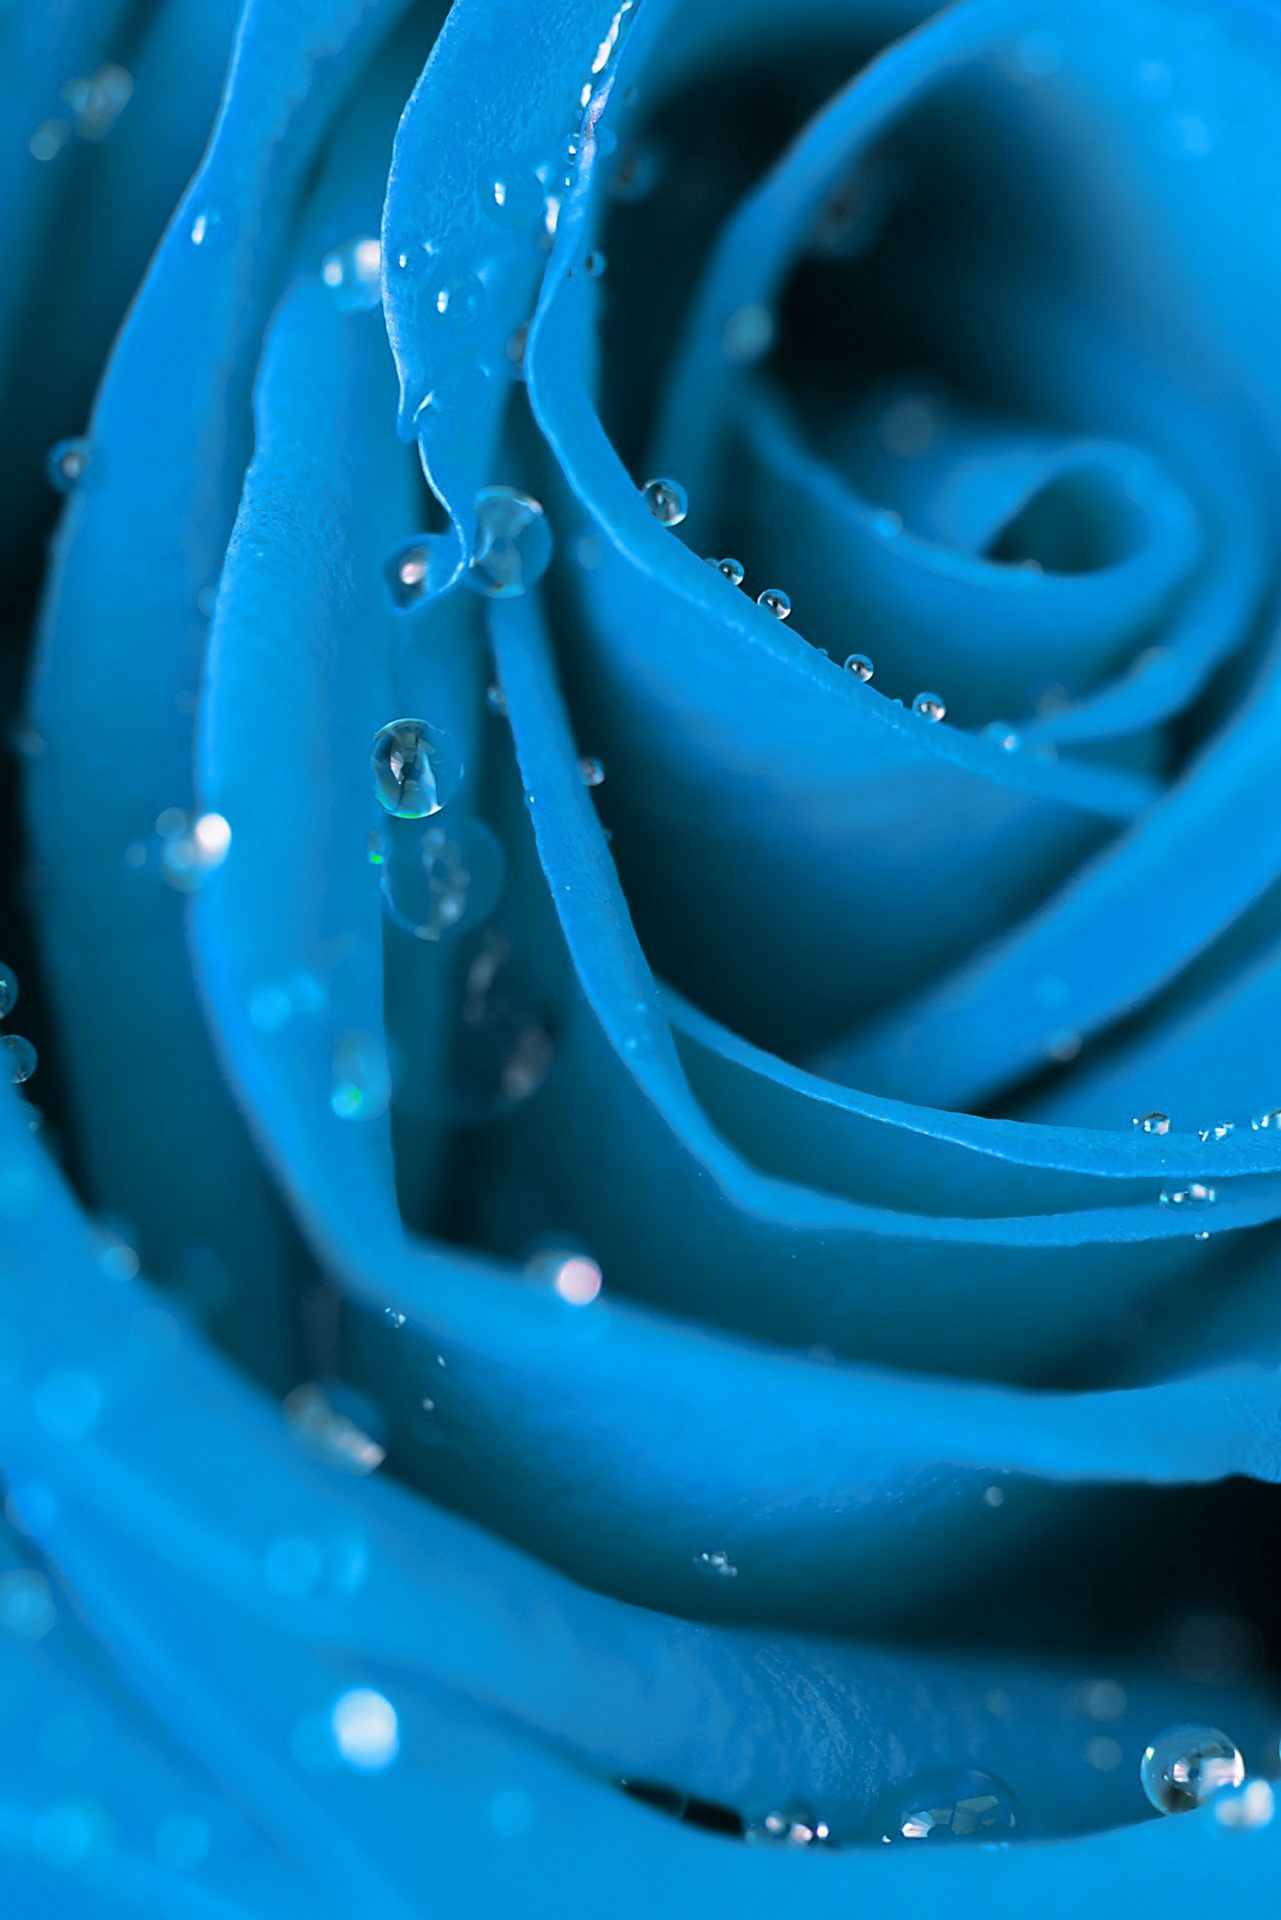 Rose Blue